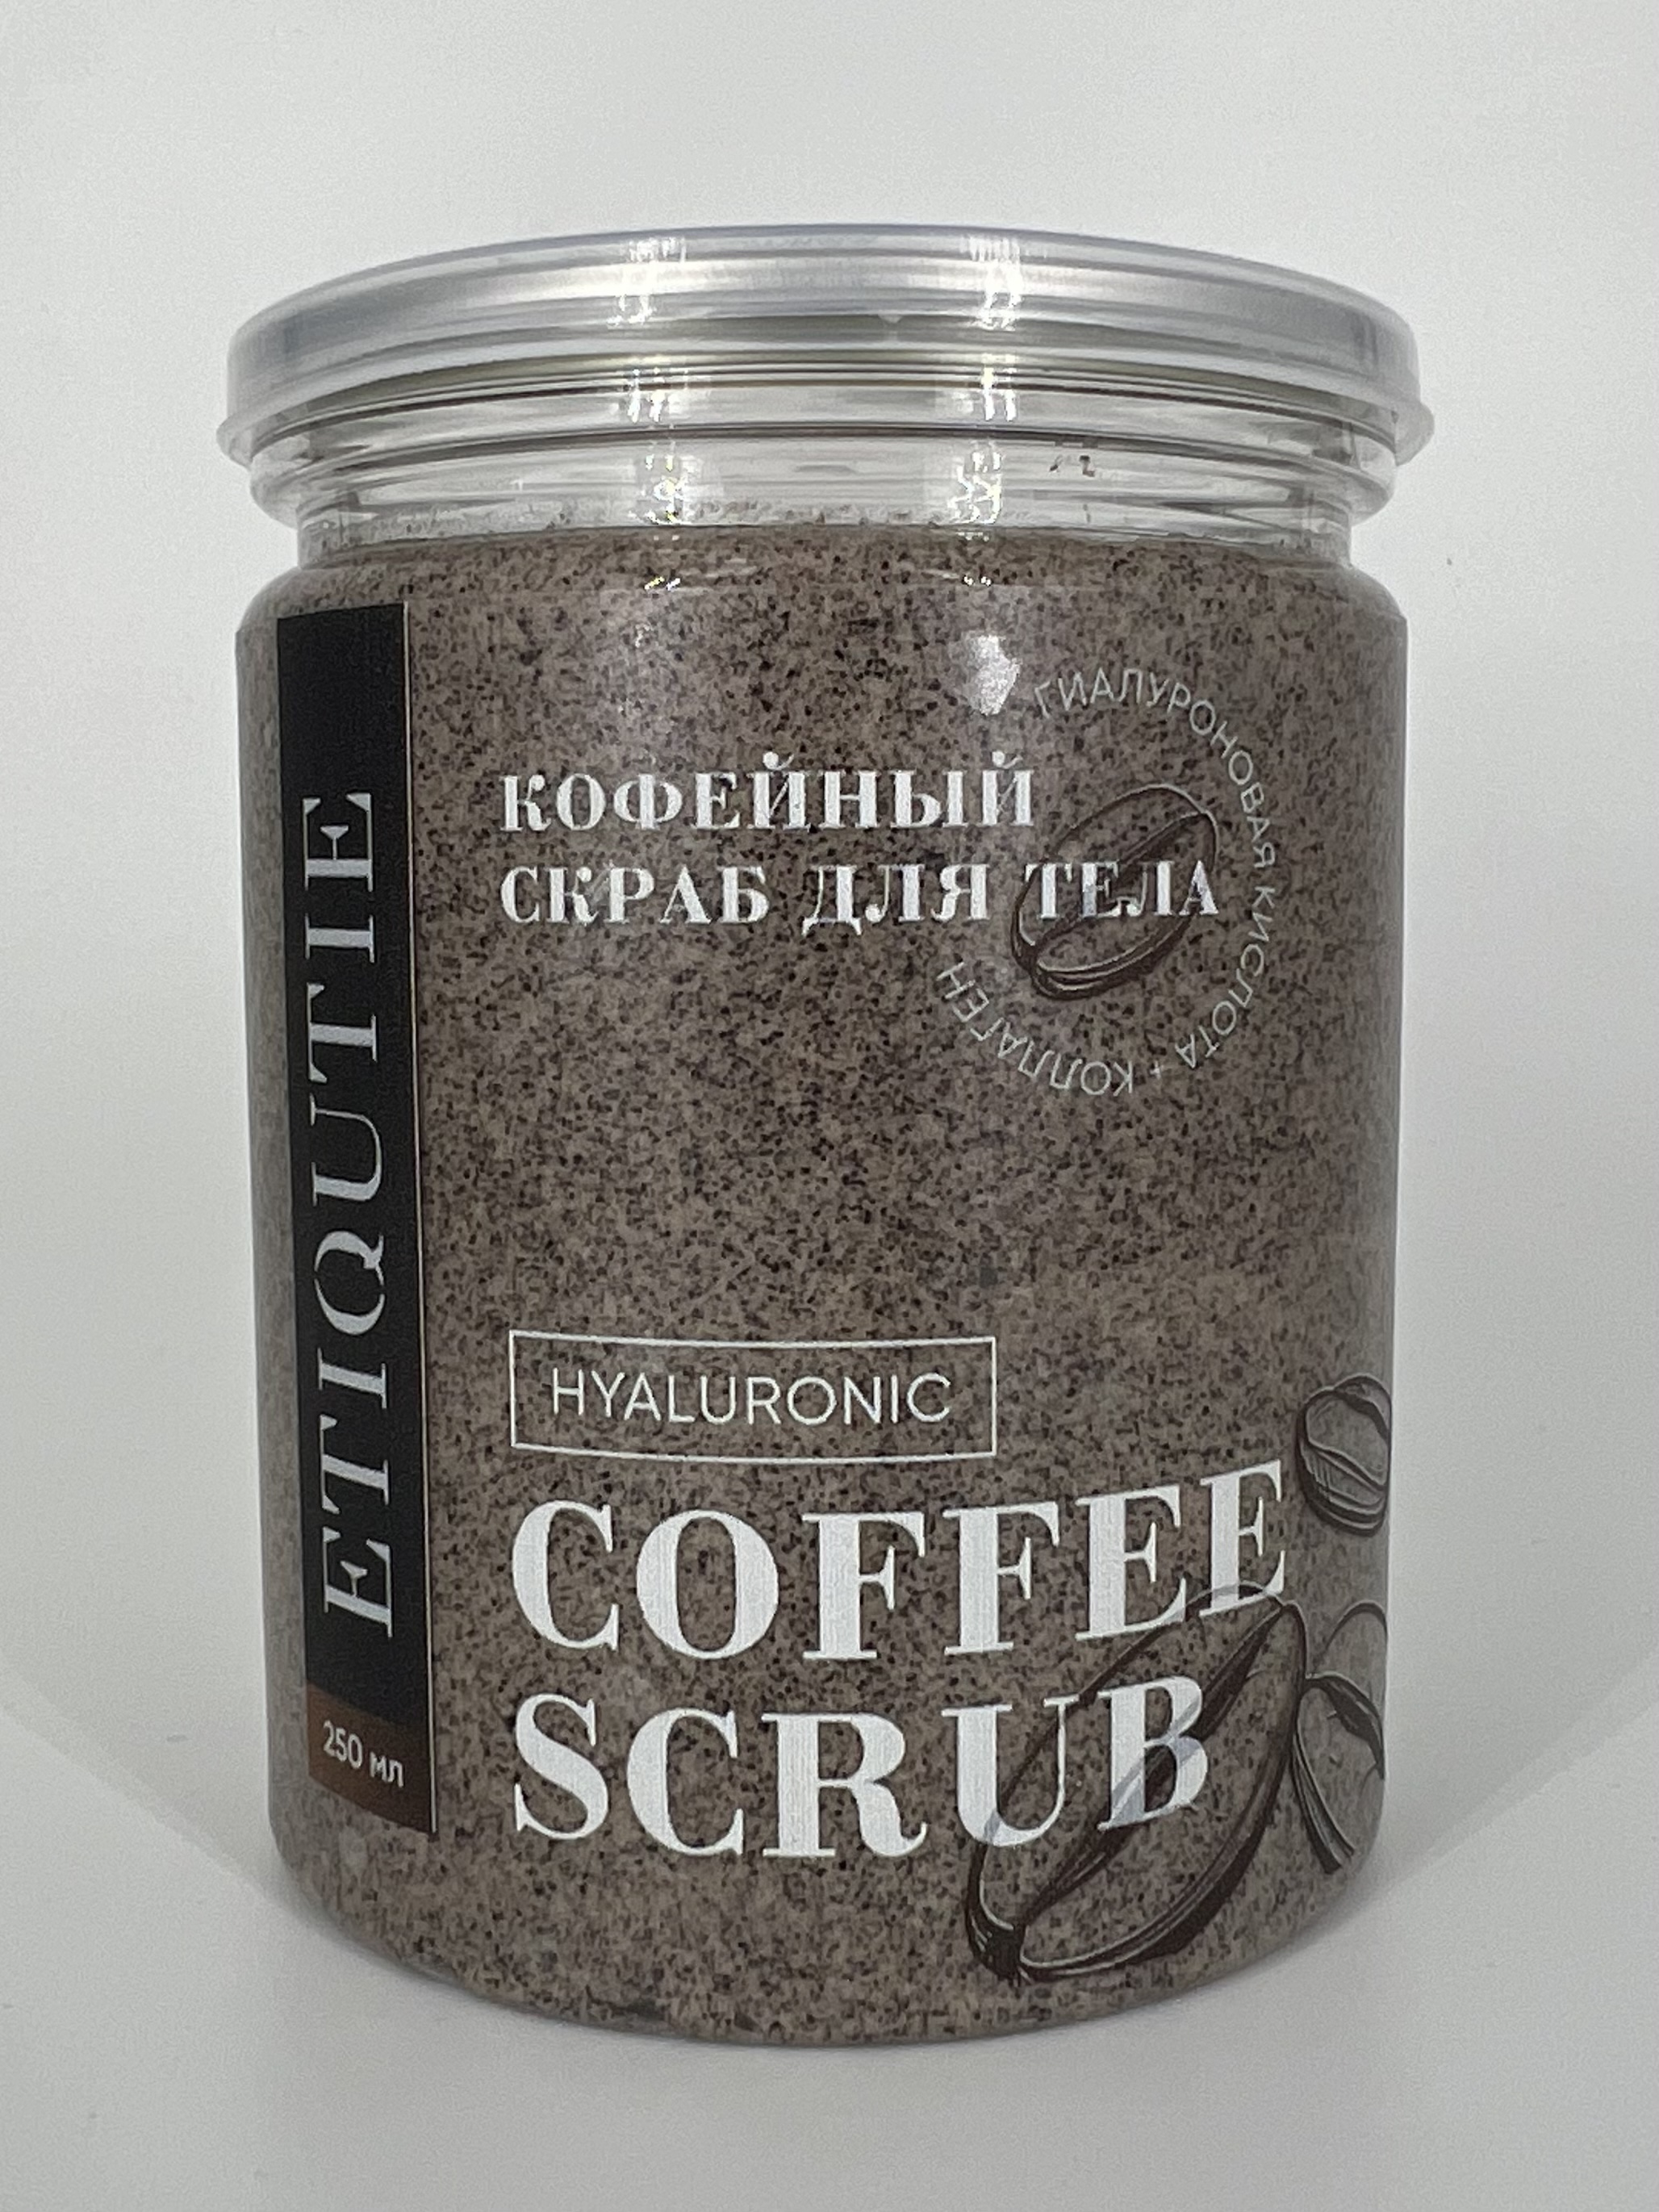 Гиалуроновый скраб кофейный ETIQUTIE с коллагеном для тела 200г paw factory сахарно солевой антицеллюлитный скраб для тела кофе и шоколад 250 0